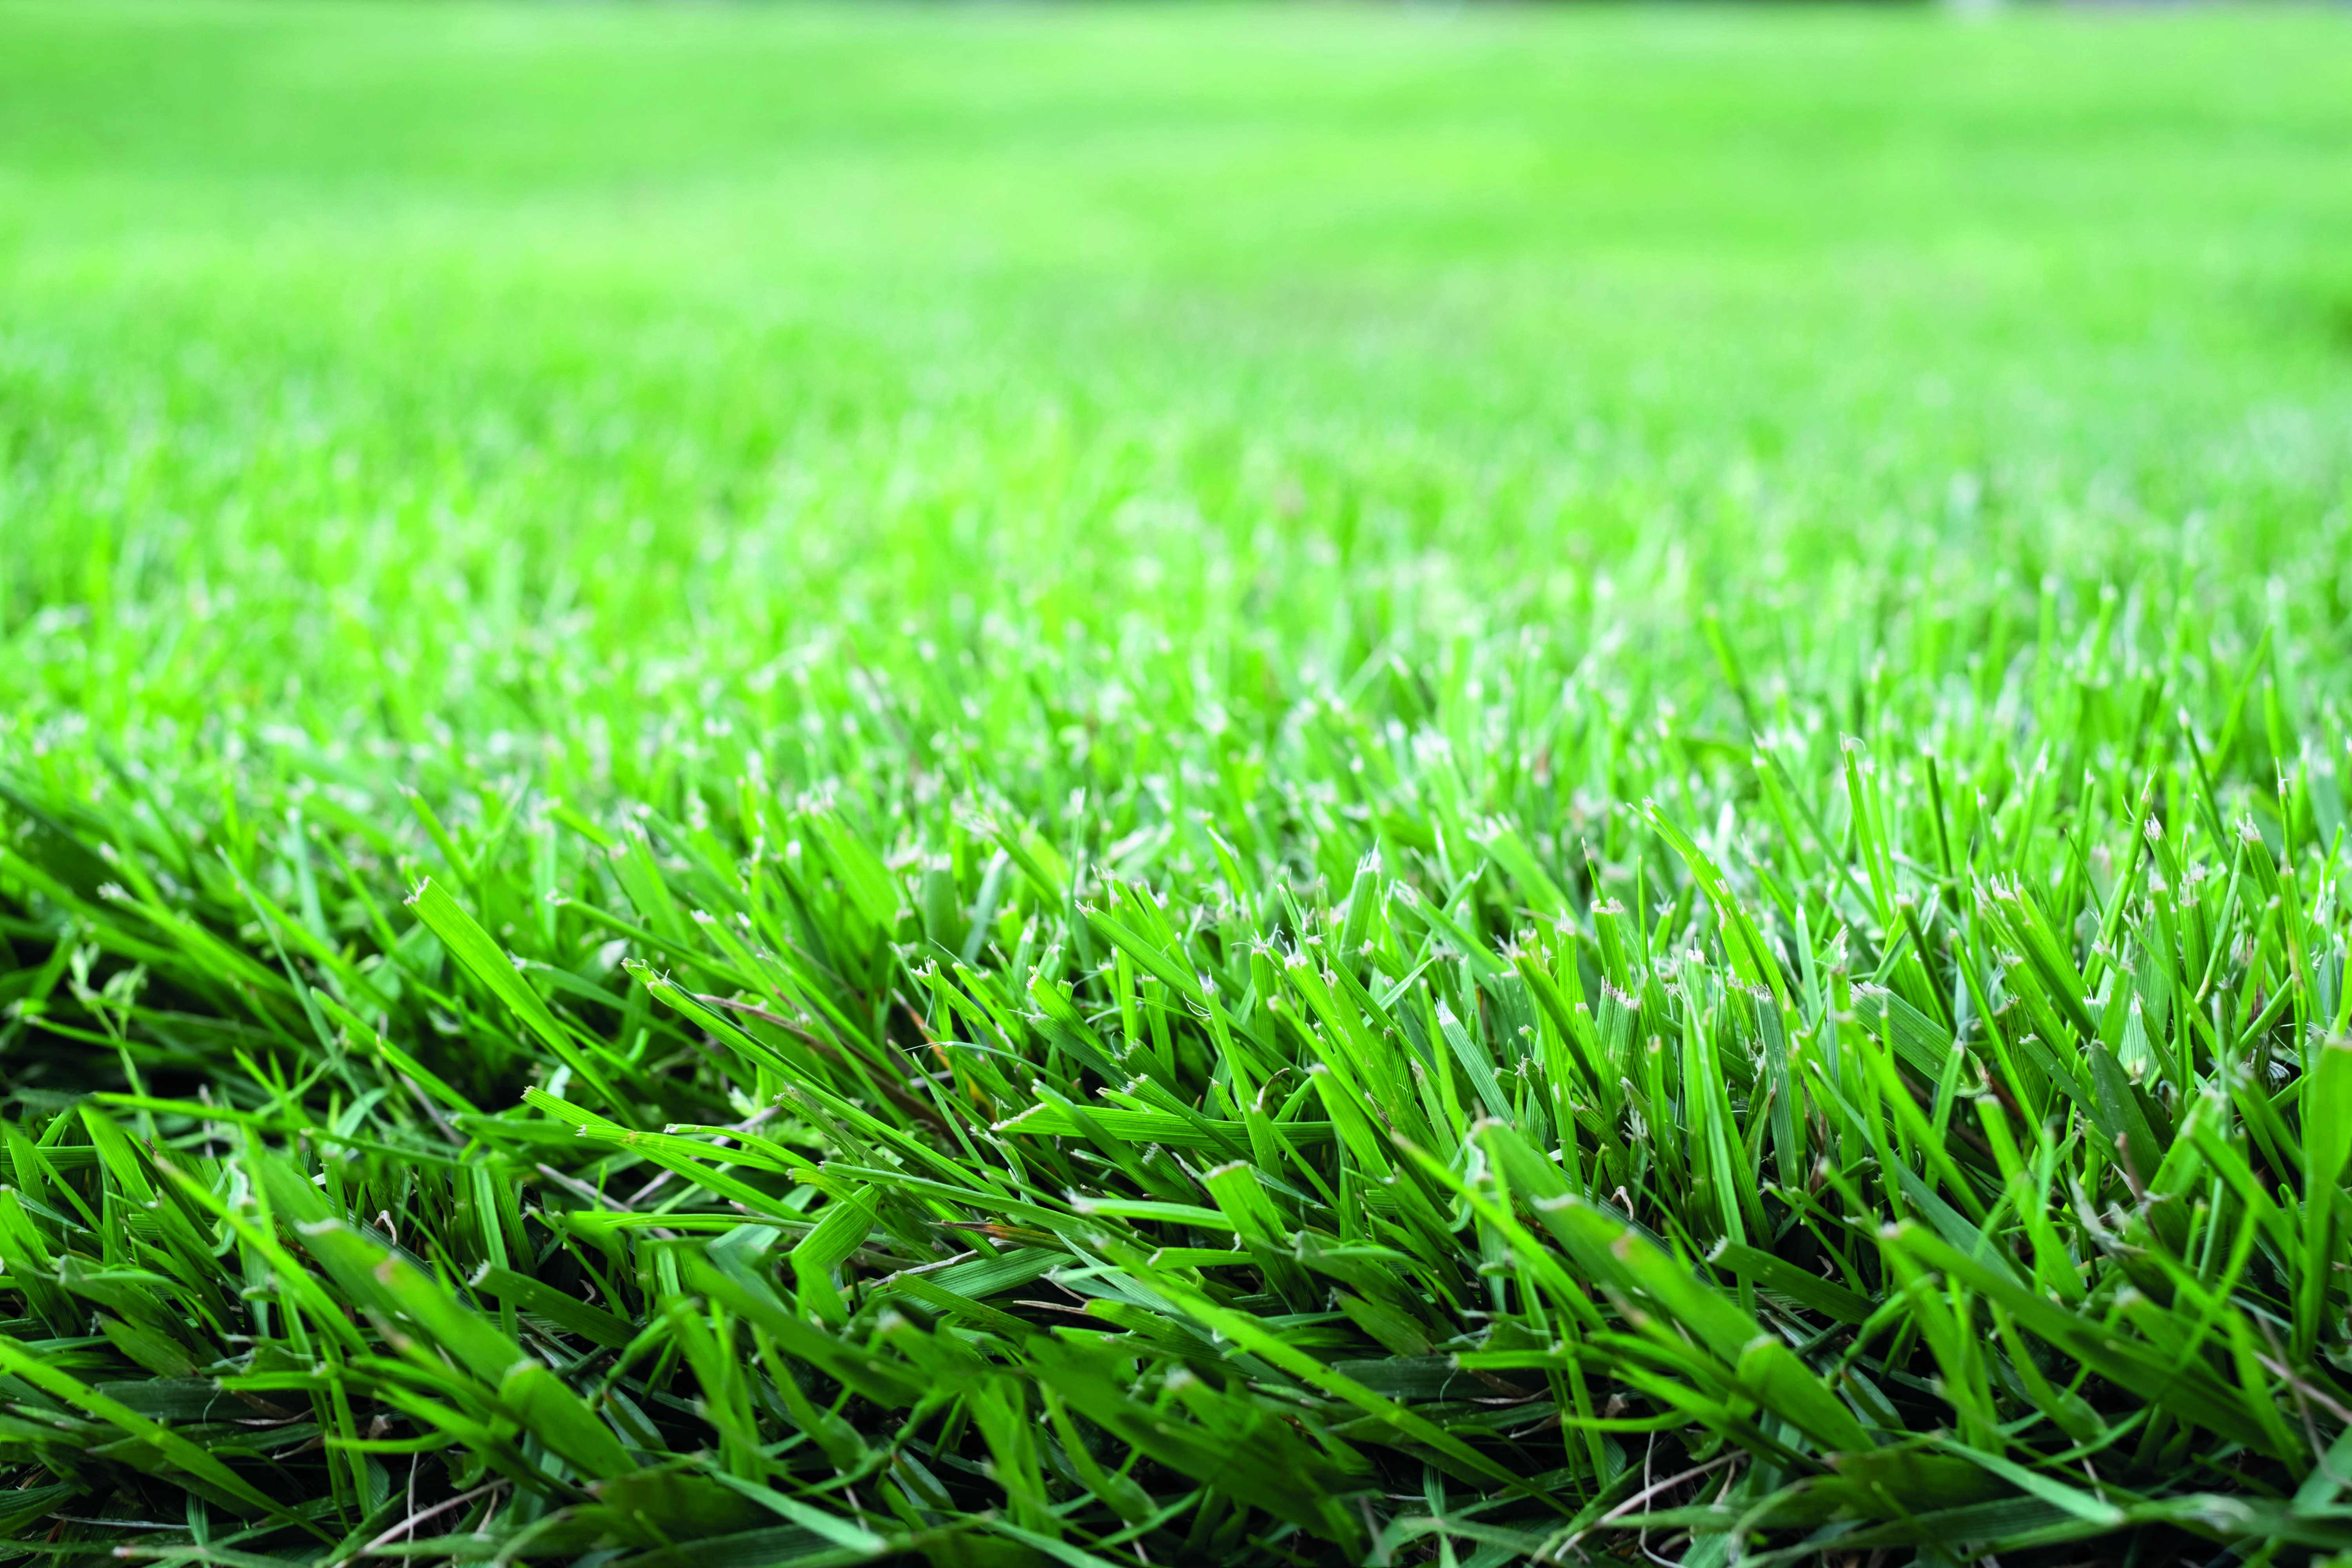 Choisir le gazon parfait : guide pratique pour une pelouse saine et durable 